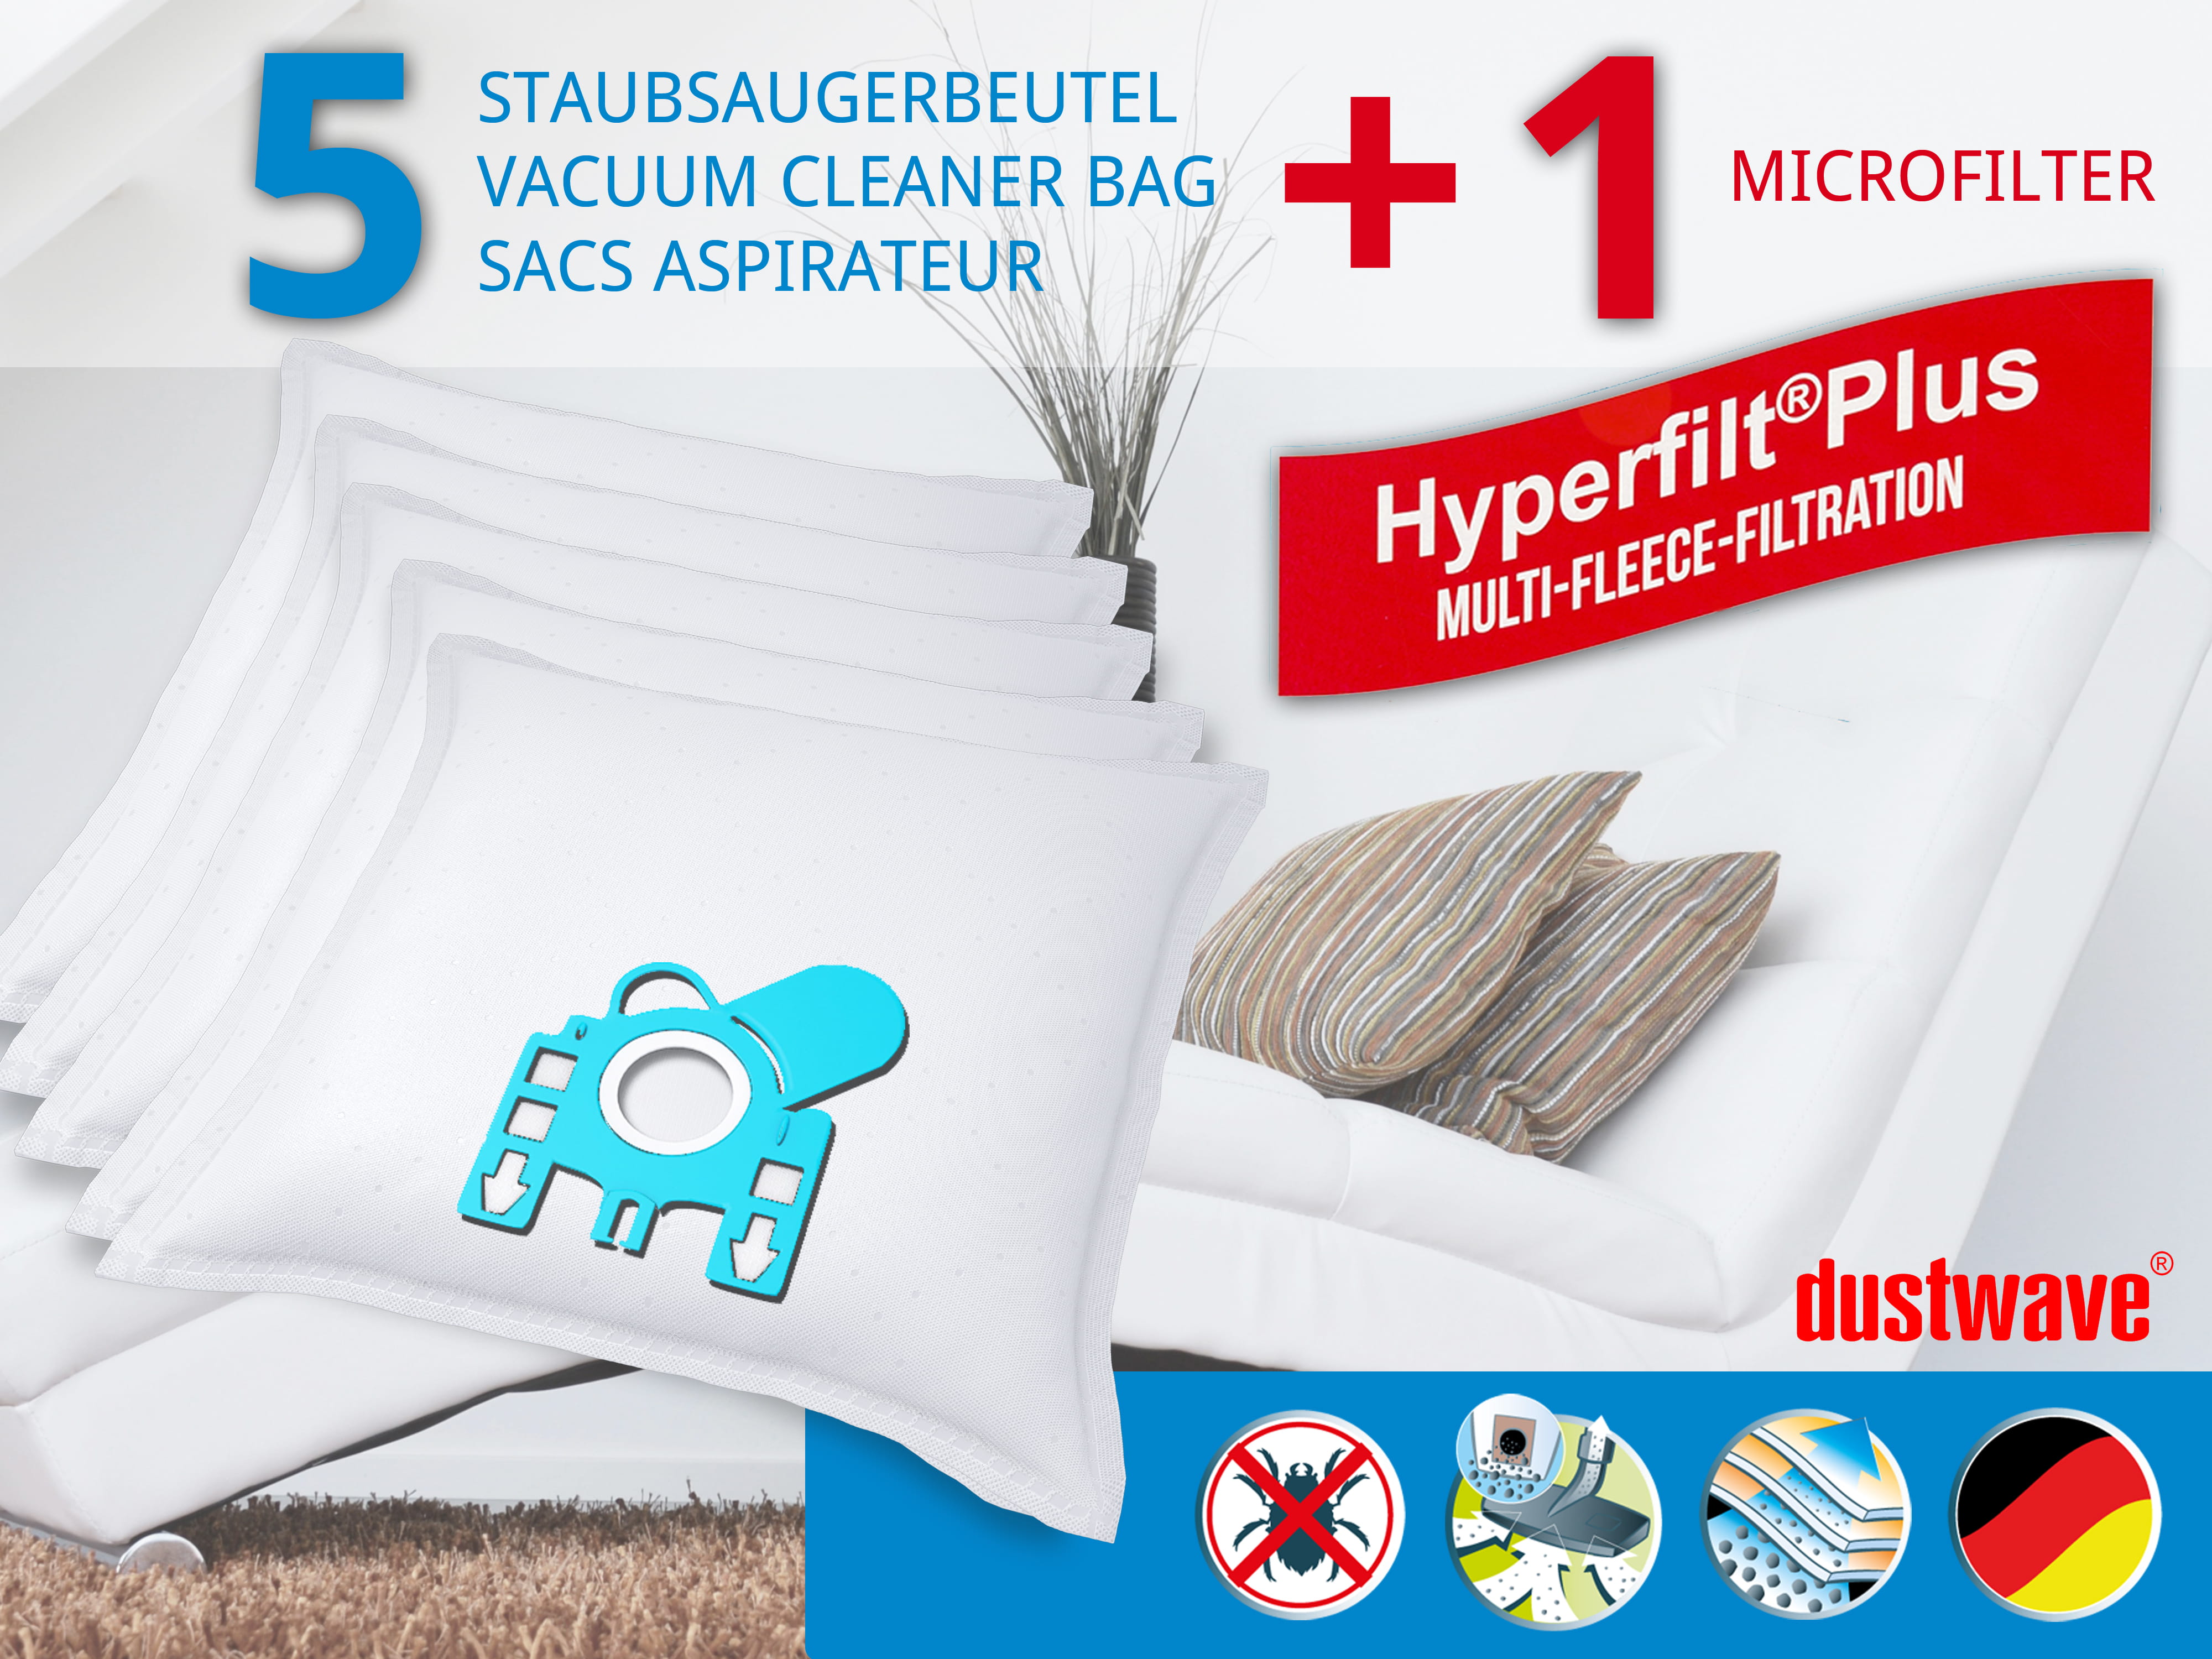 Dustwave® 5 Staubsaugerbeutel für Miele S5 Eco Line - hocheffizient, mehrlagiges Mikrovlies mit Hygieneverschluss - Made in Germany